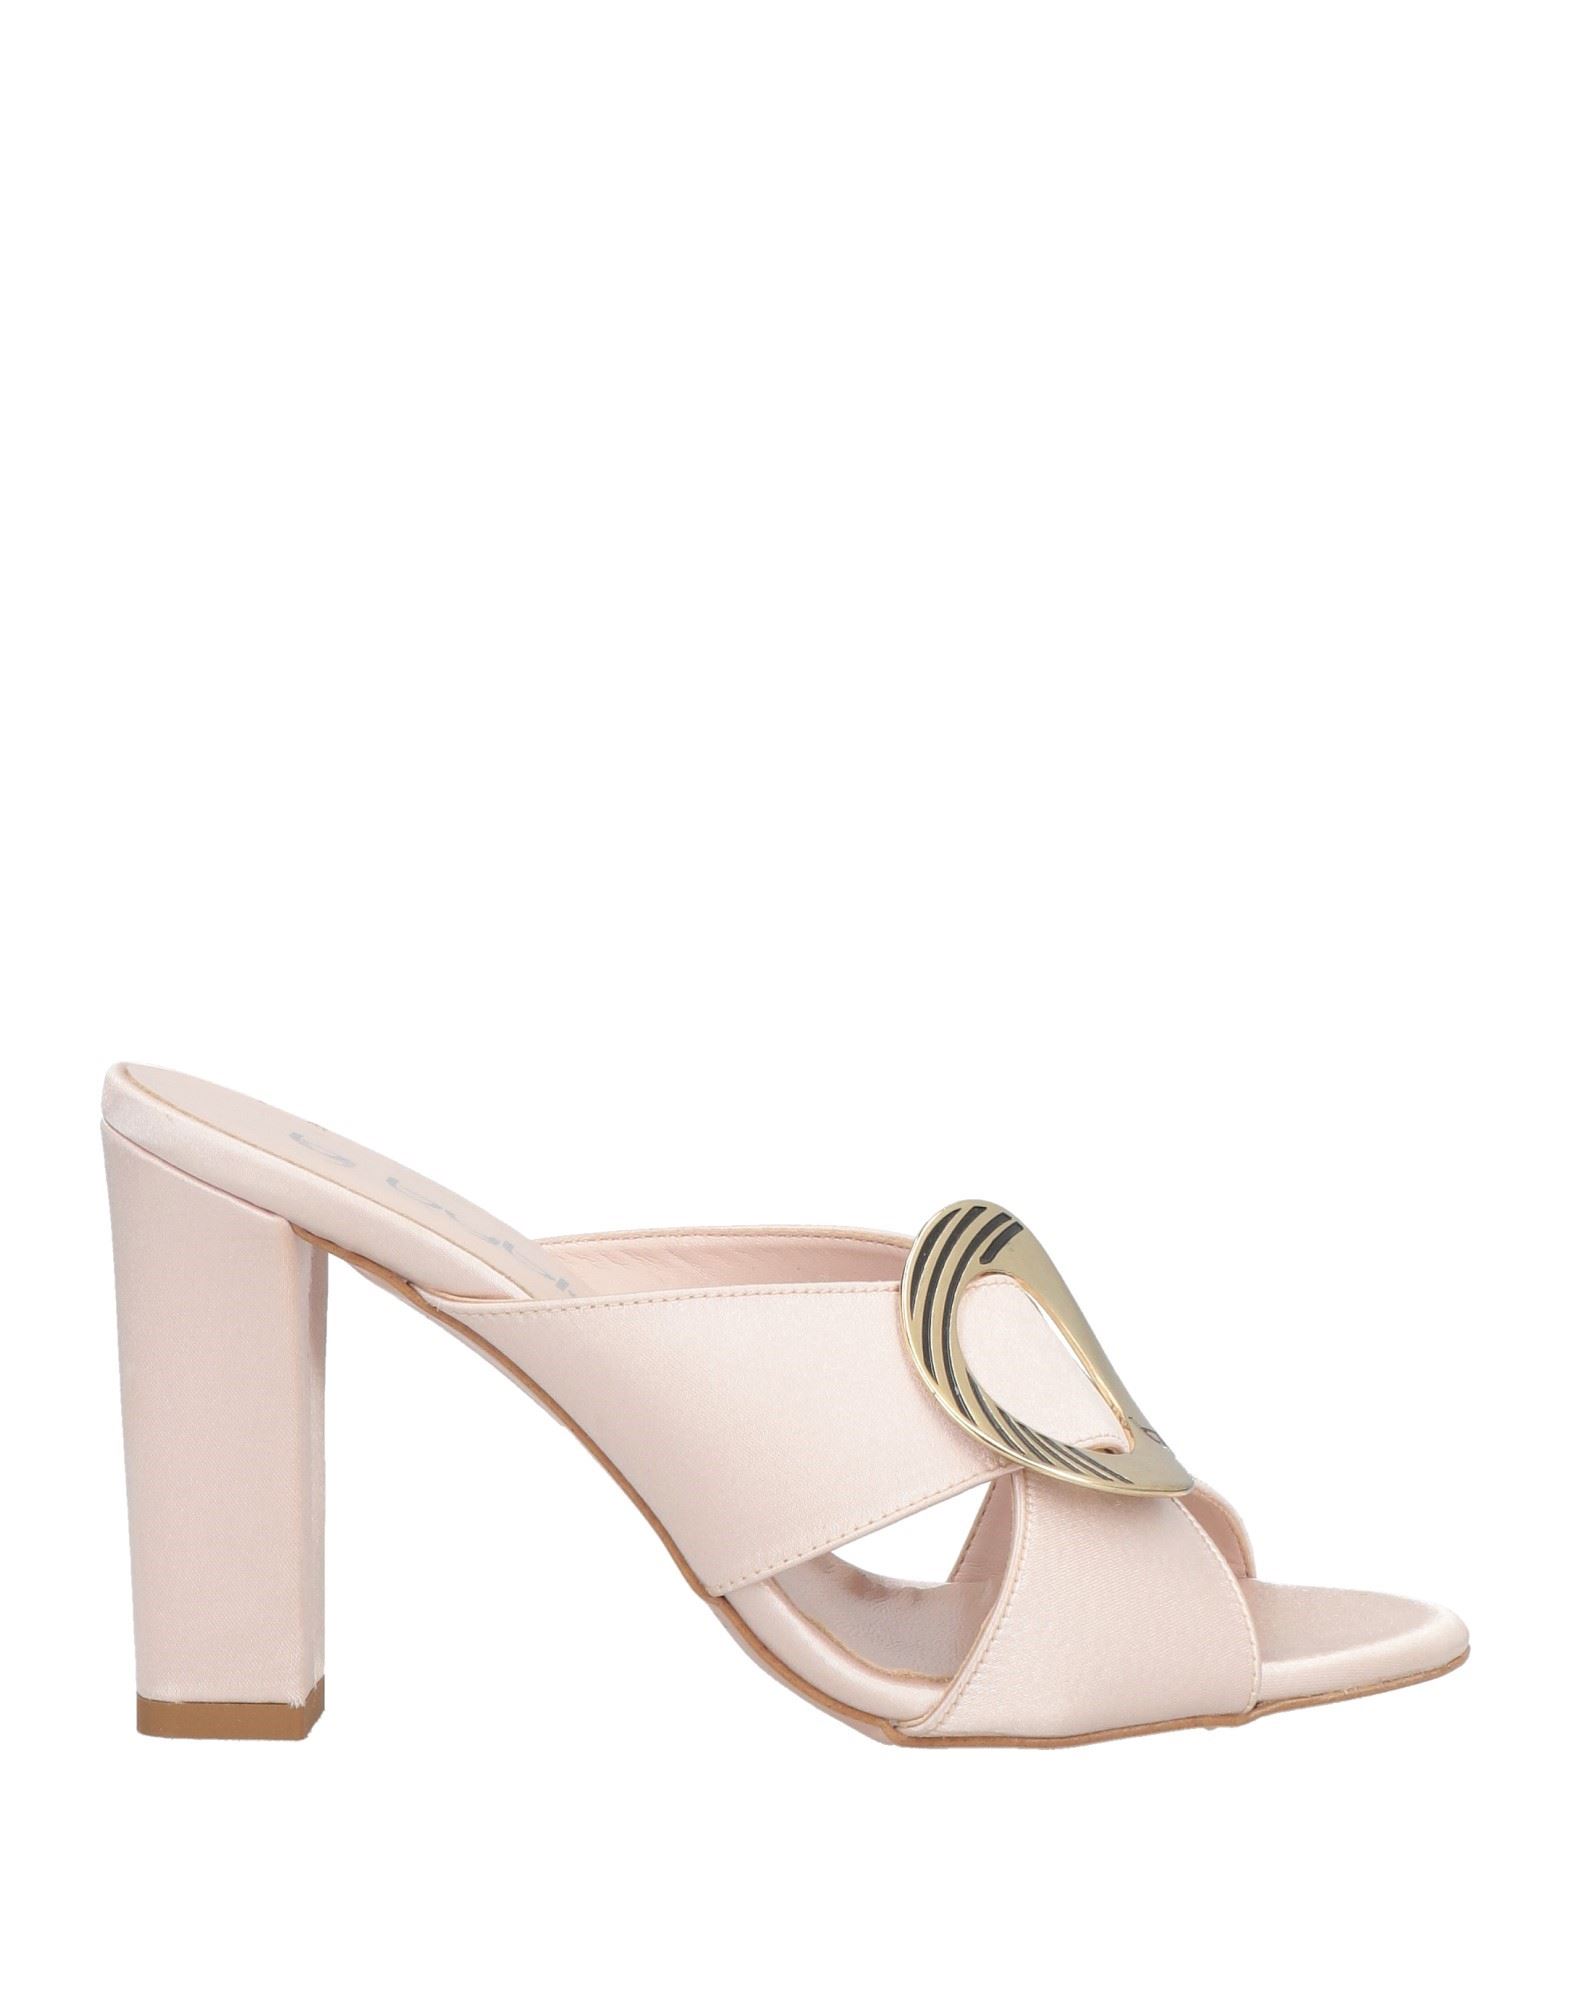 Byblos Sandals In Light Pink